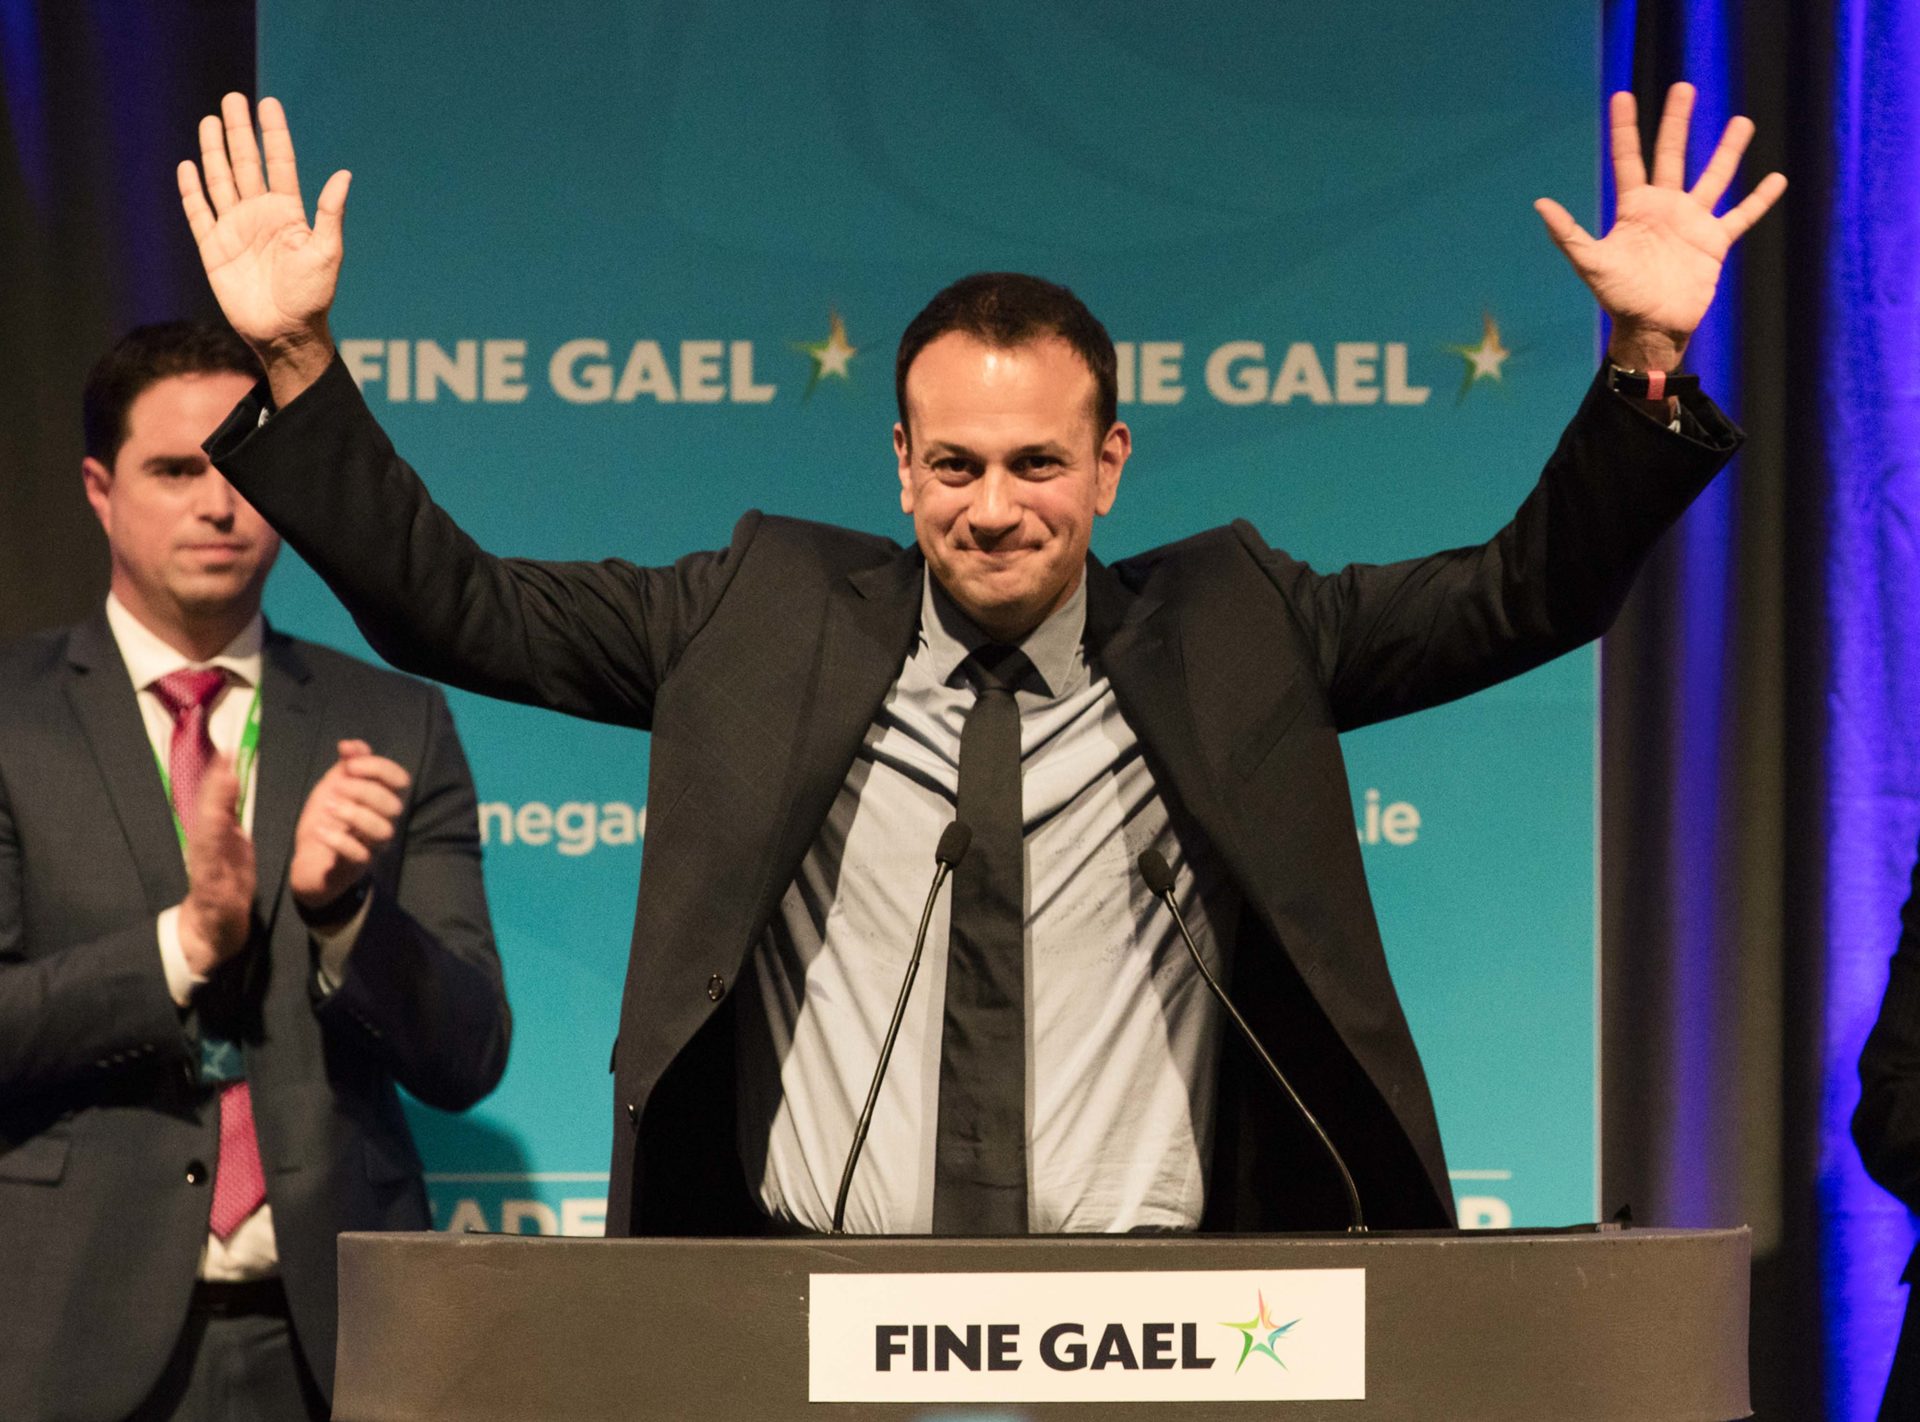 Leo Varadkar is elected leader of Fine Gael in 2017